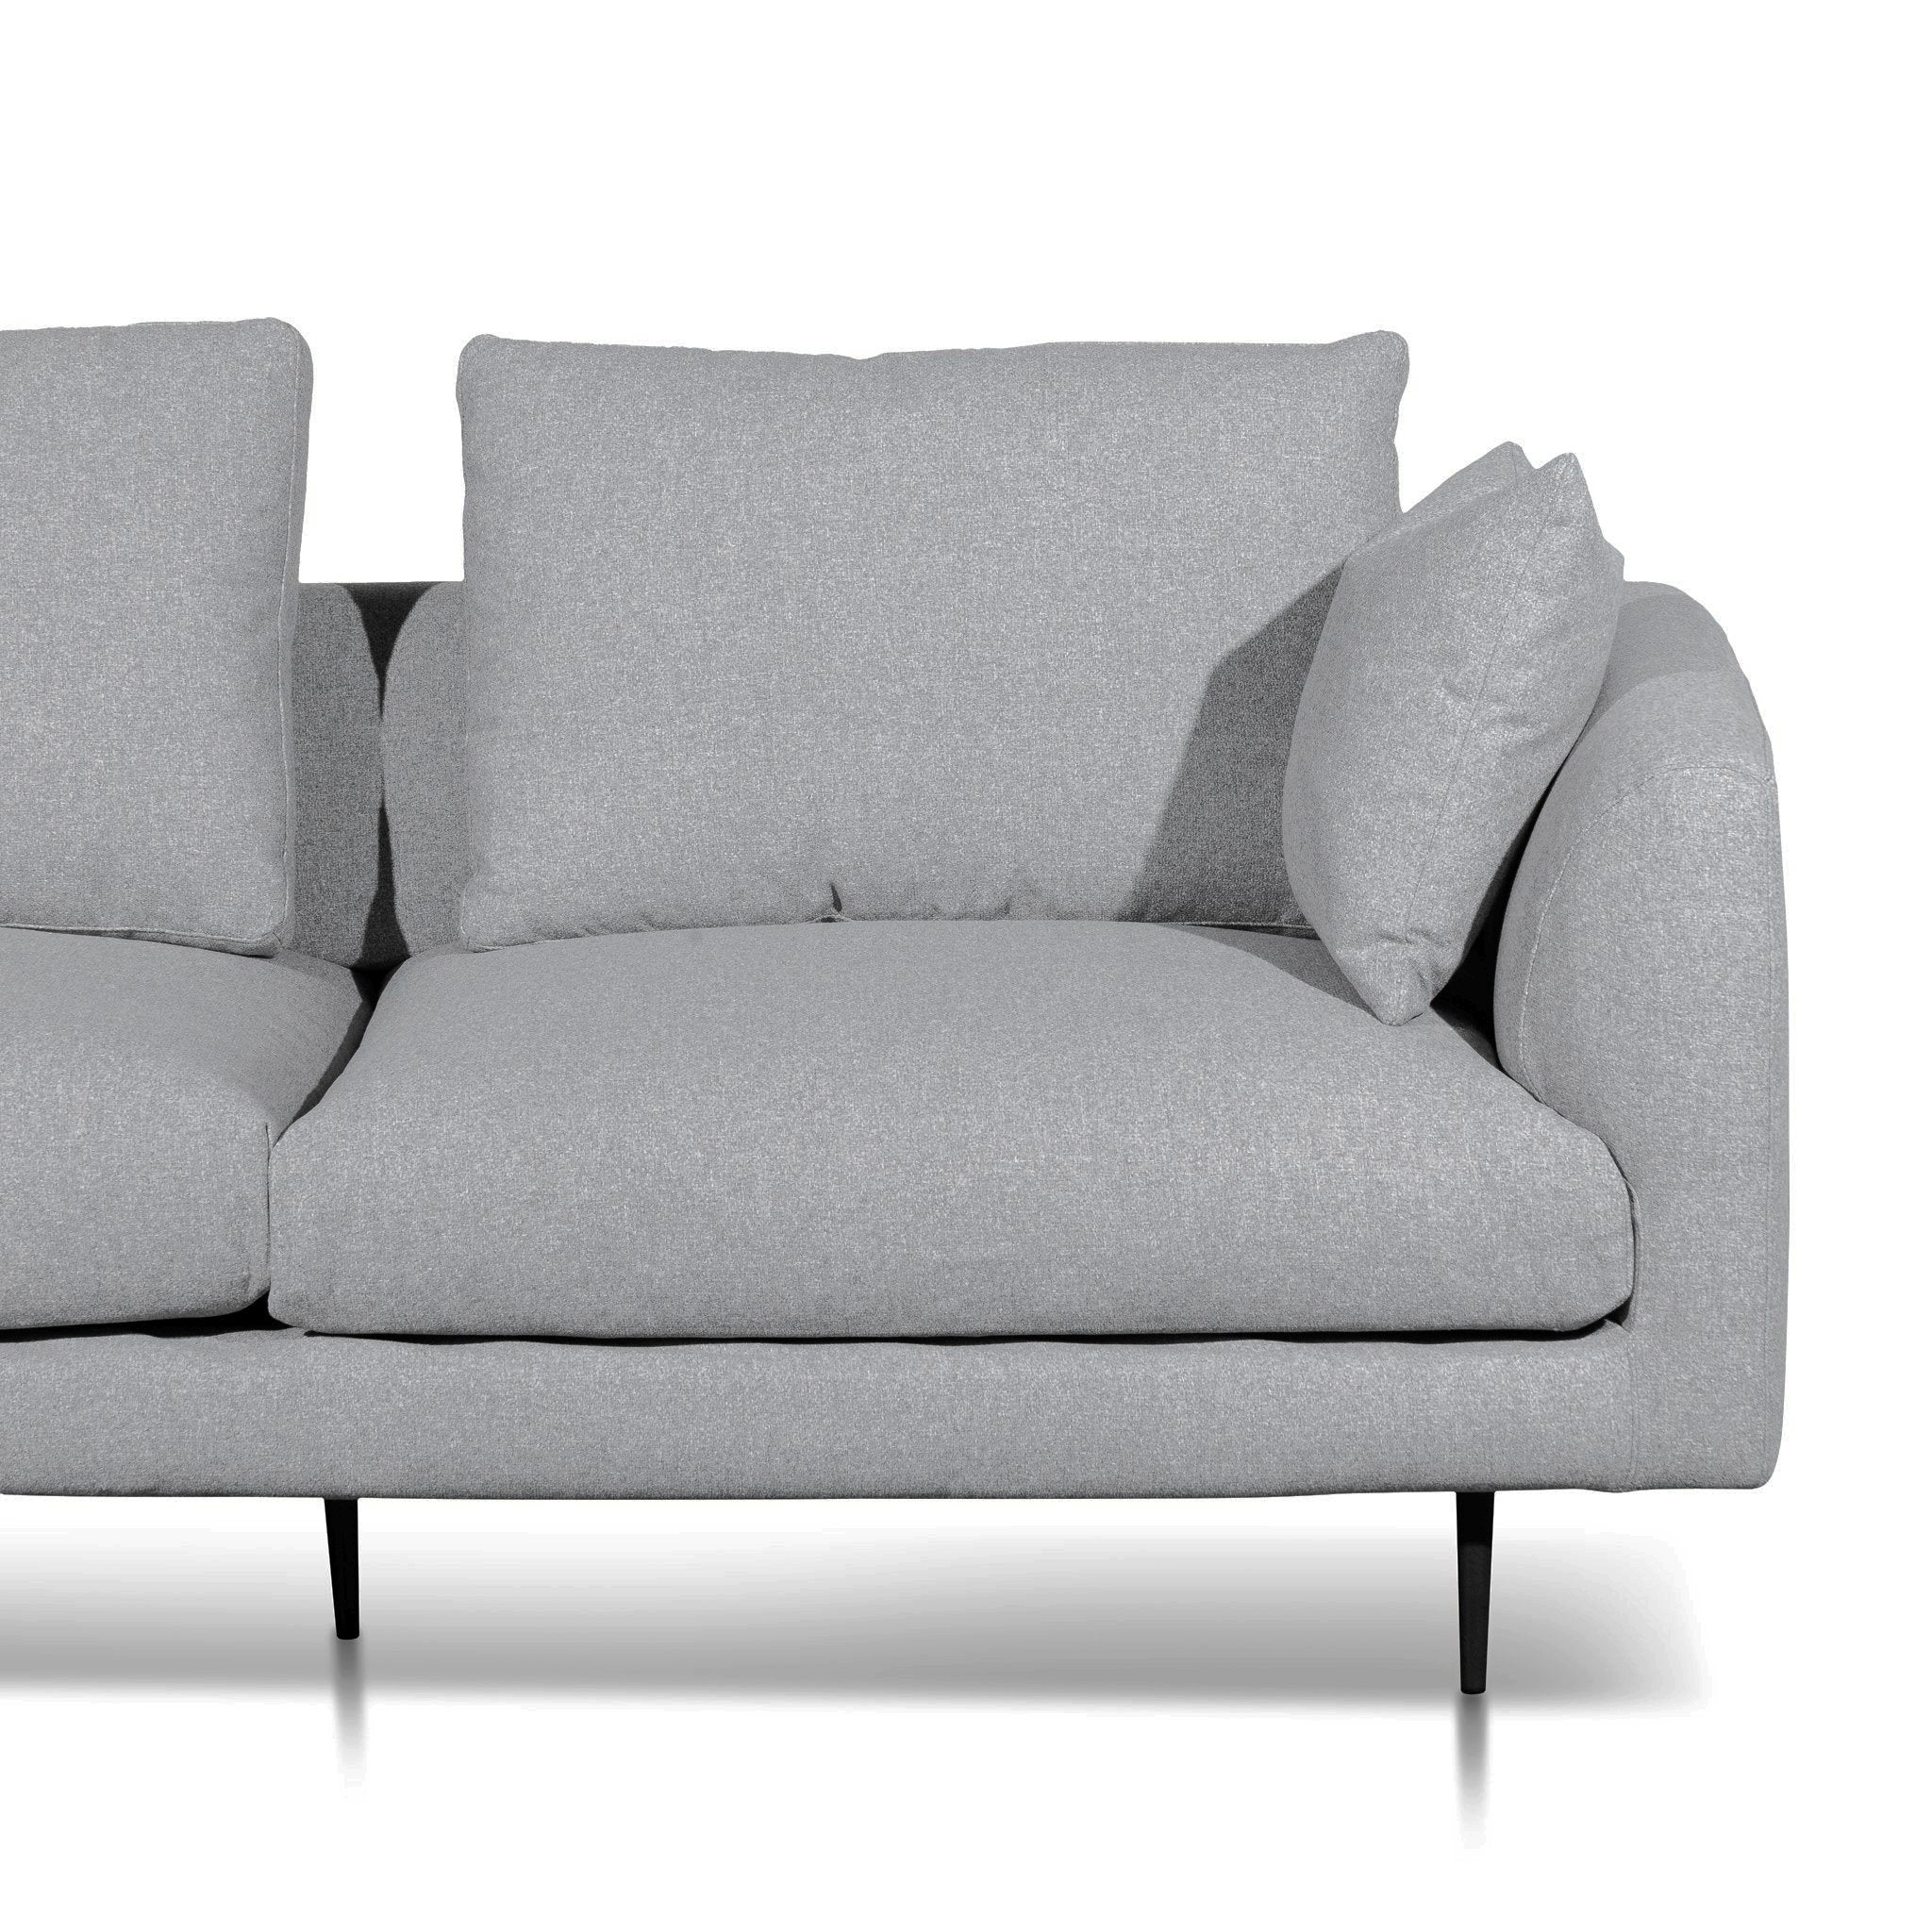 Ava 2.5S Sofa - Light Grey - Sofas